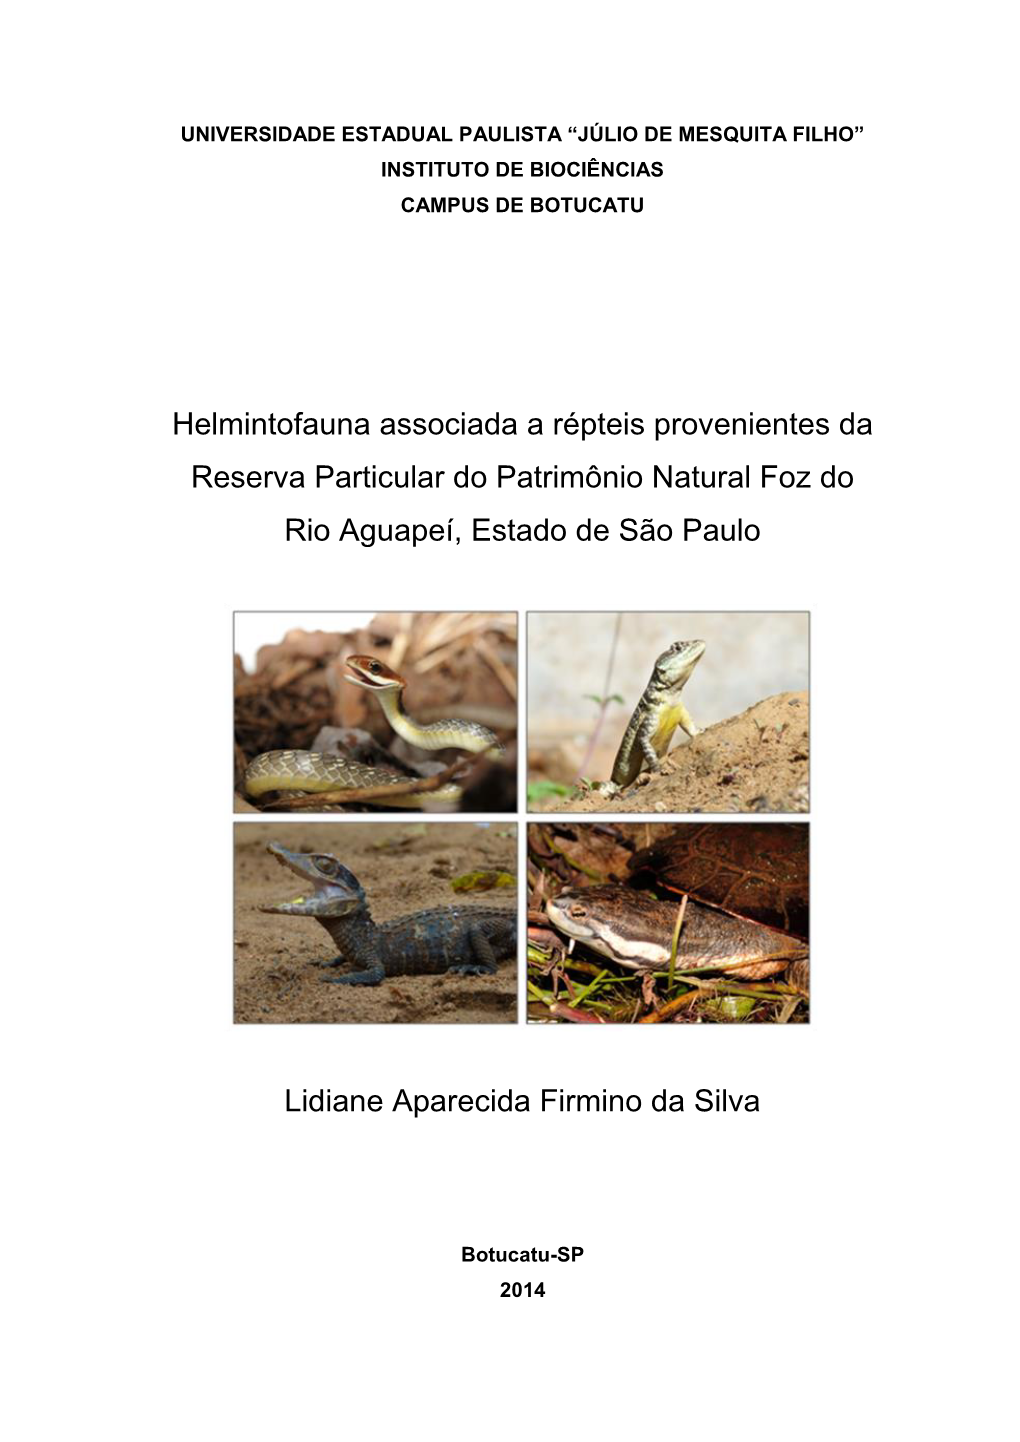 Helmintofauna Associada a Répteis Provenientes Da Reserva Particular Do Patrimônio Natural Foz Do Rio Aguapeí, Estado De São Paulo